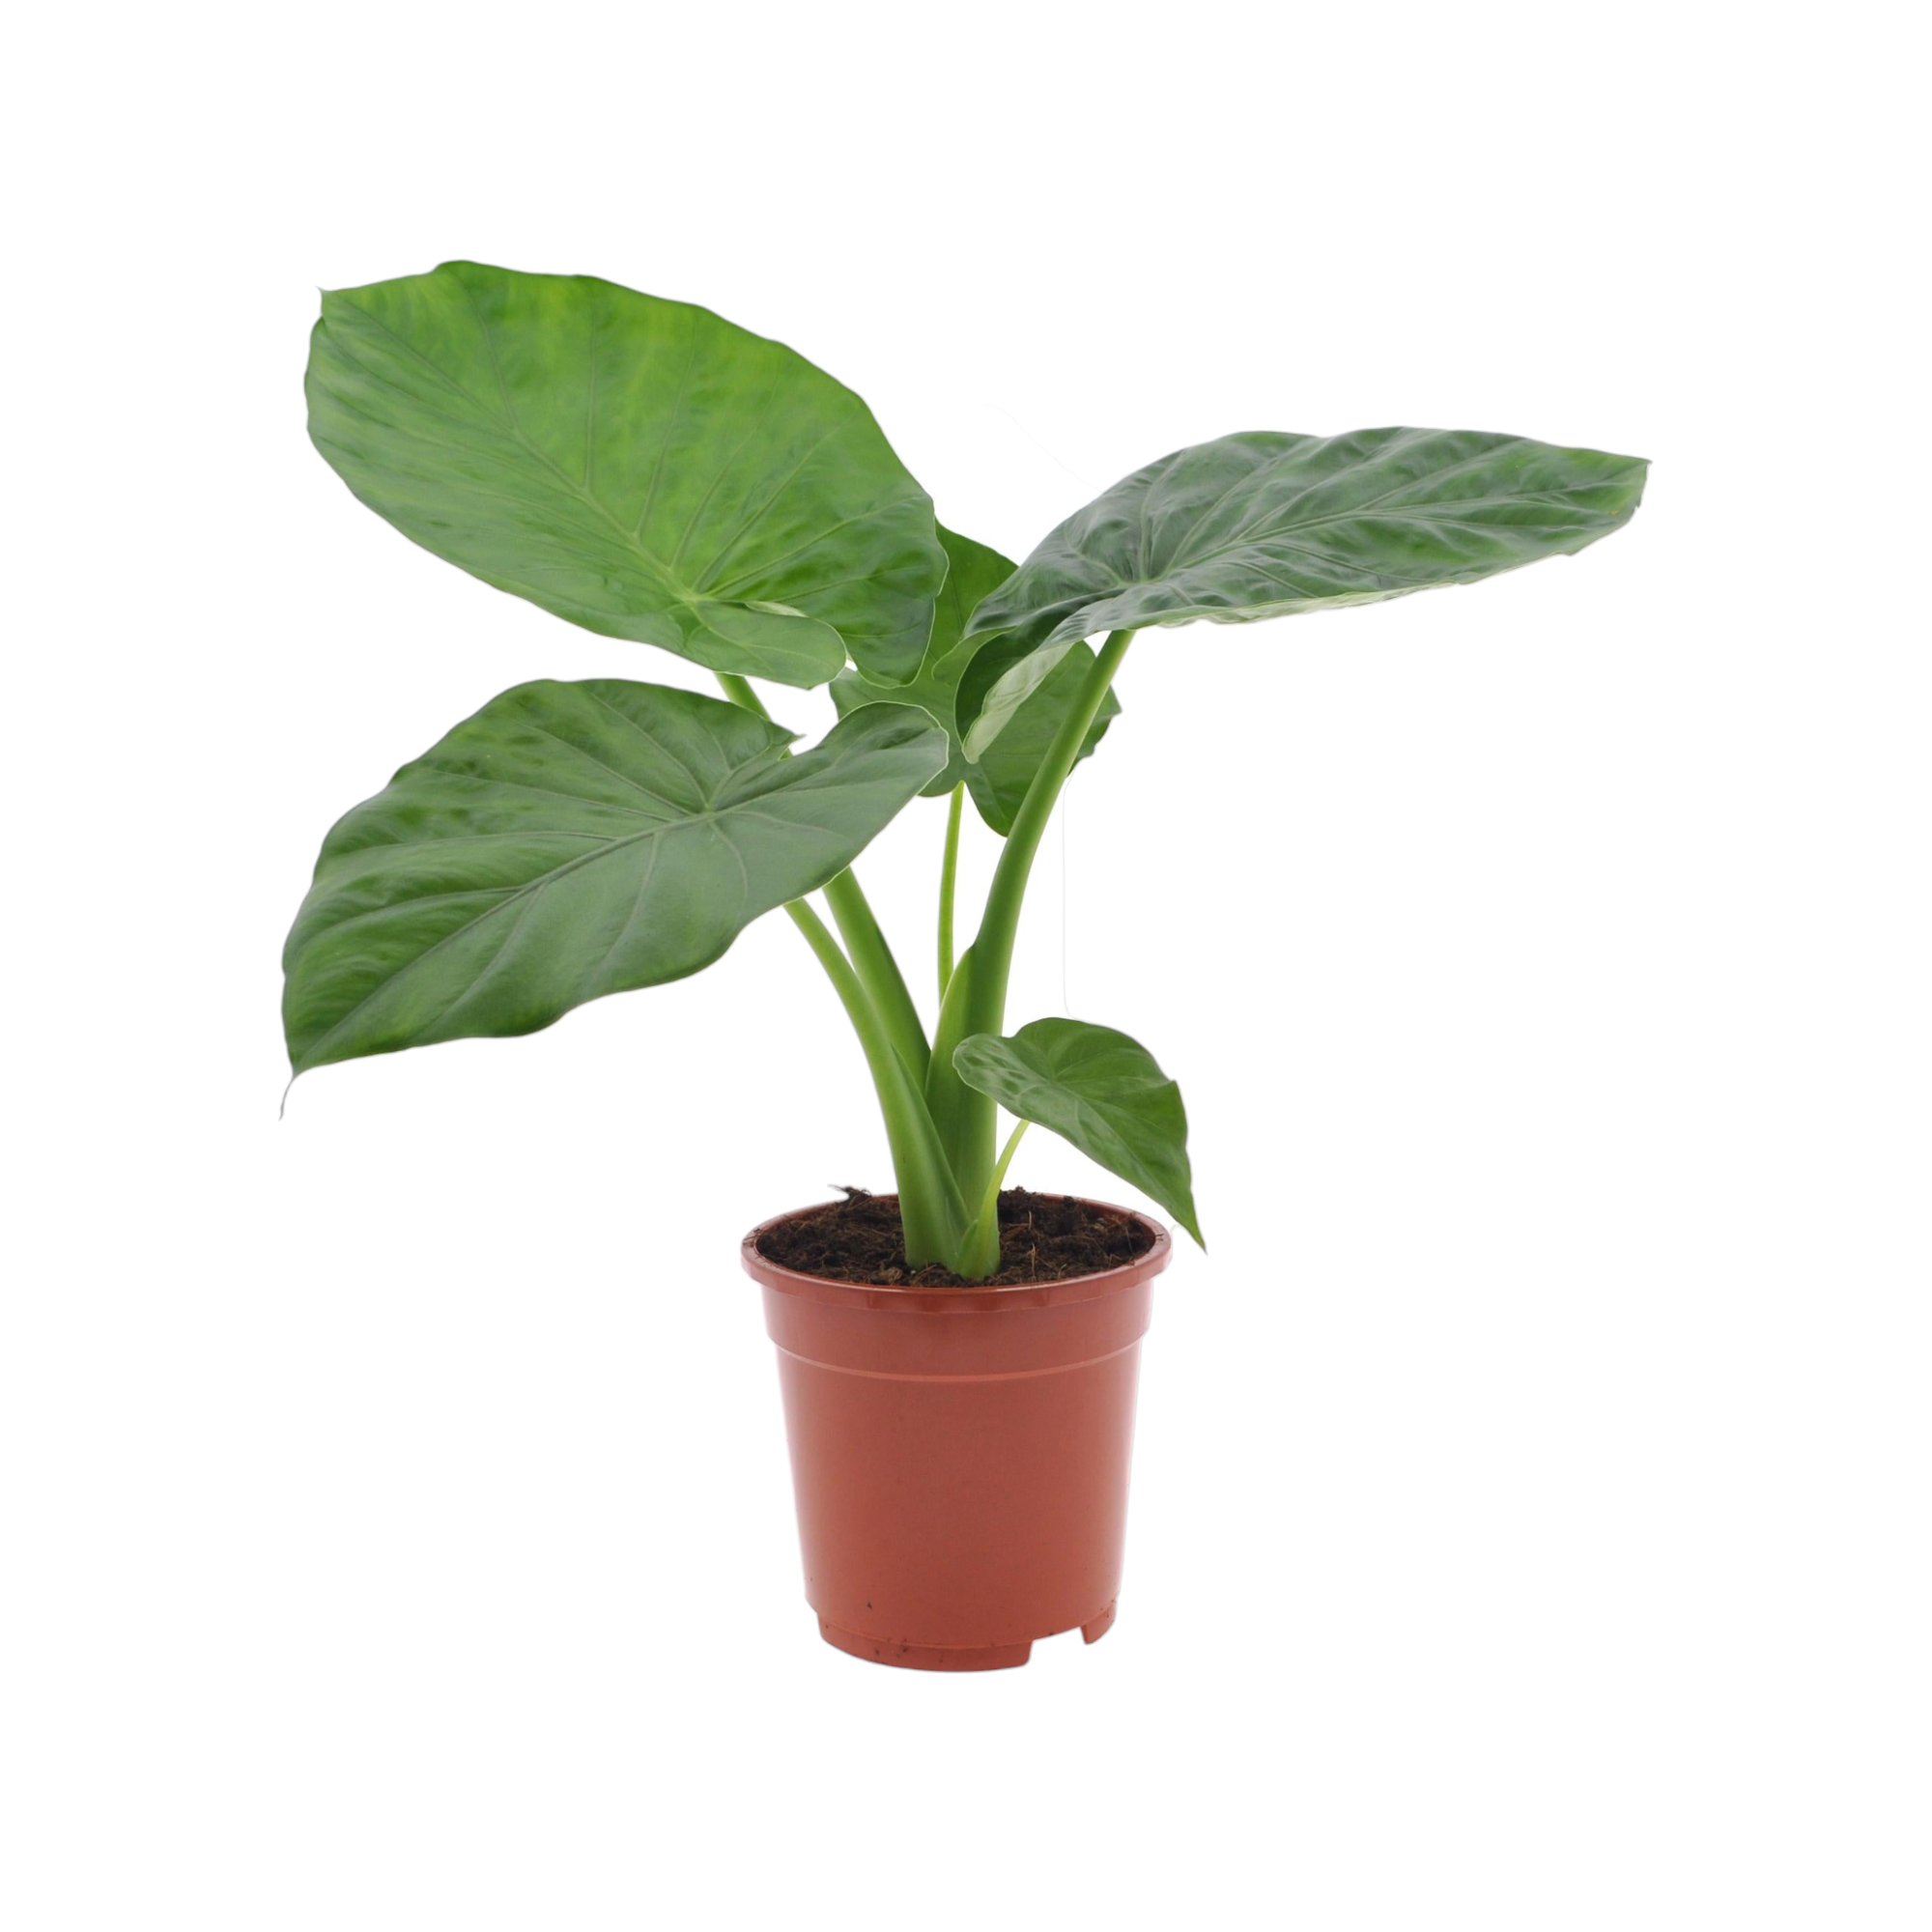 Plantes d'intérieur : les bienfaits – La Green Touch